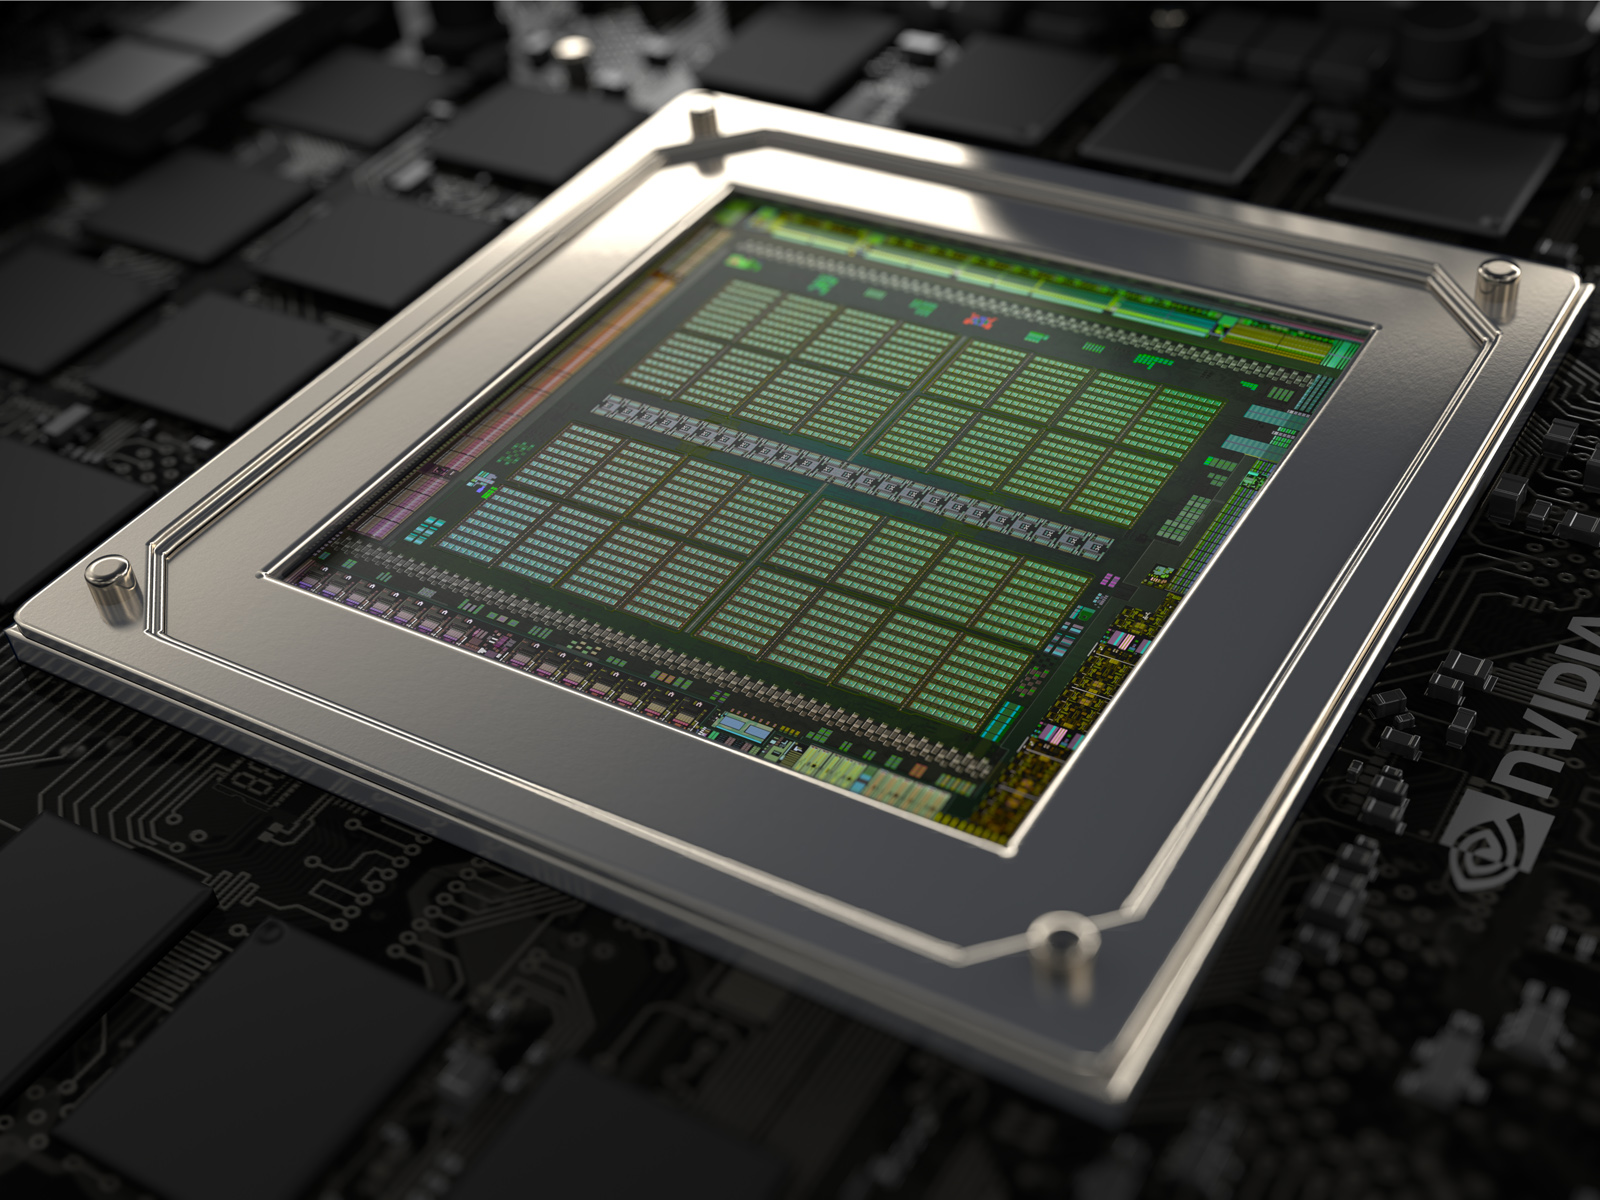 NVIDIA GeForce GTX 970M - NotebookCheck.net Tech